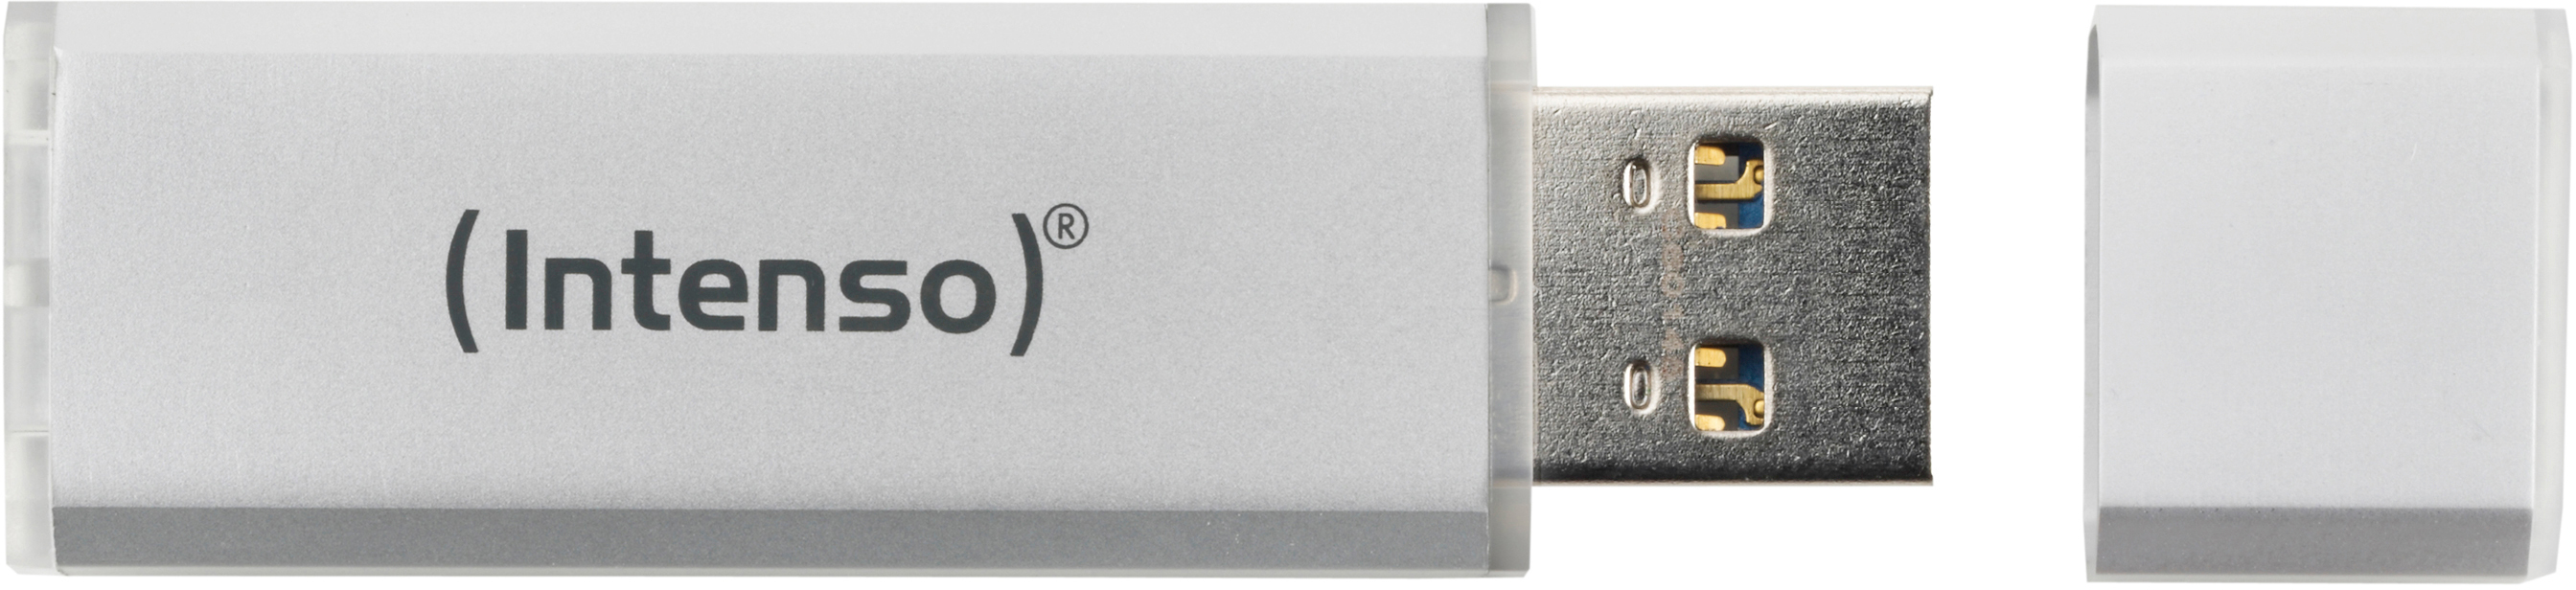 INTENSO Alu Line USB-Stick, Silber MB/s, 28 GB, 64